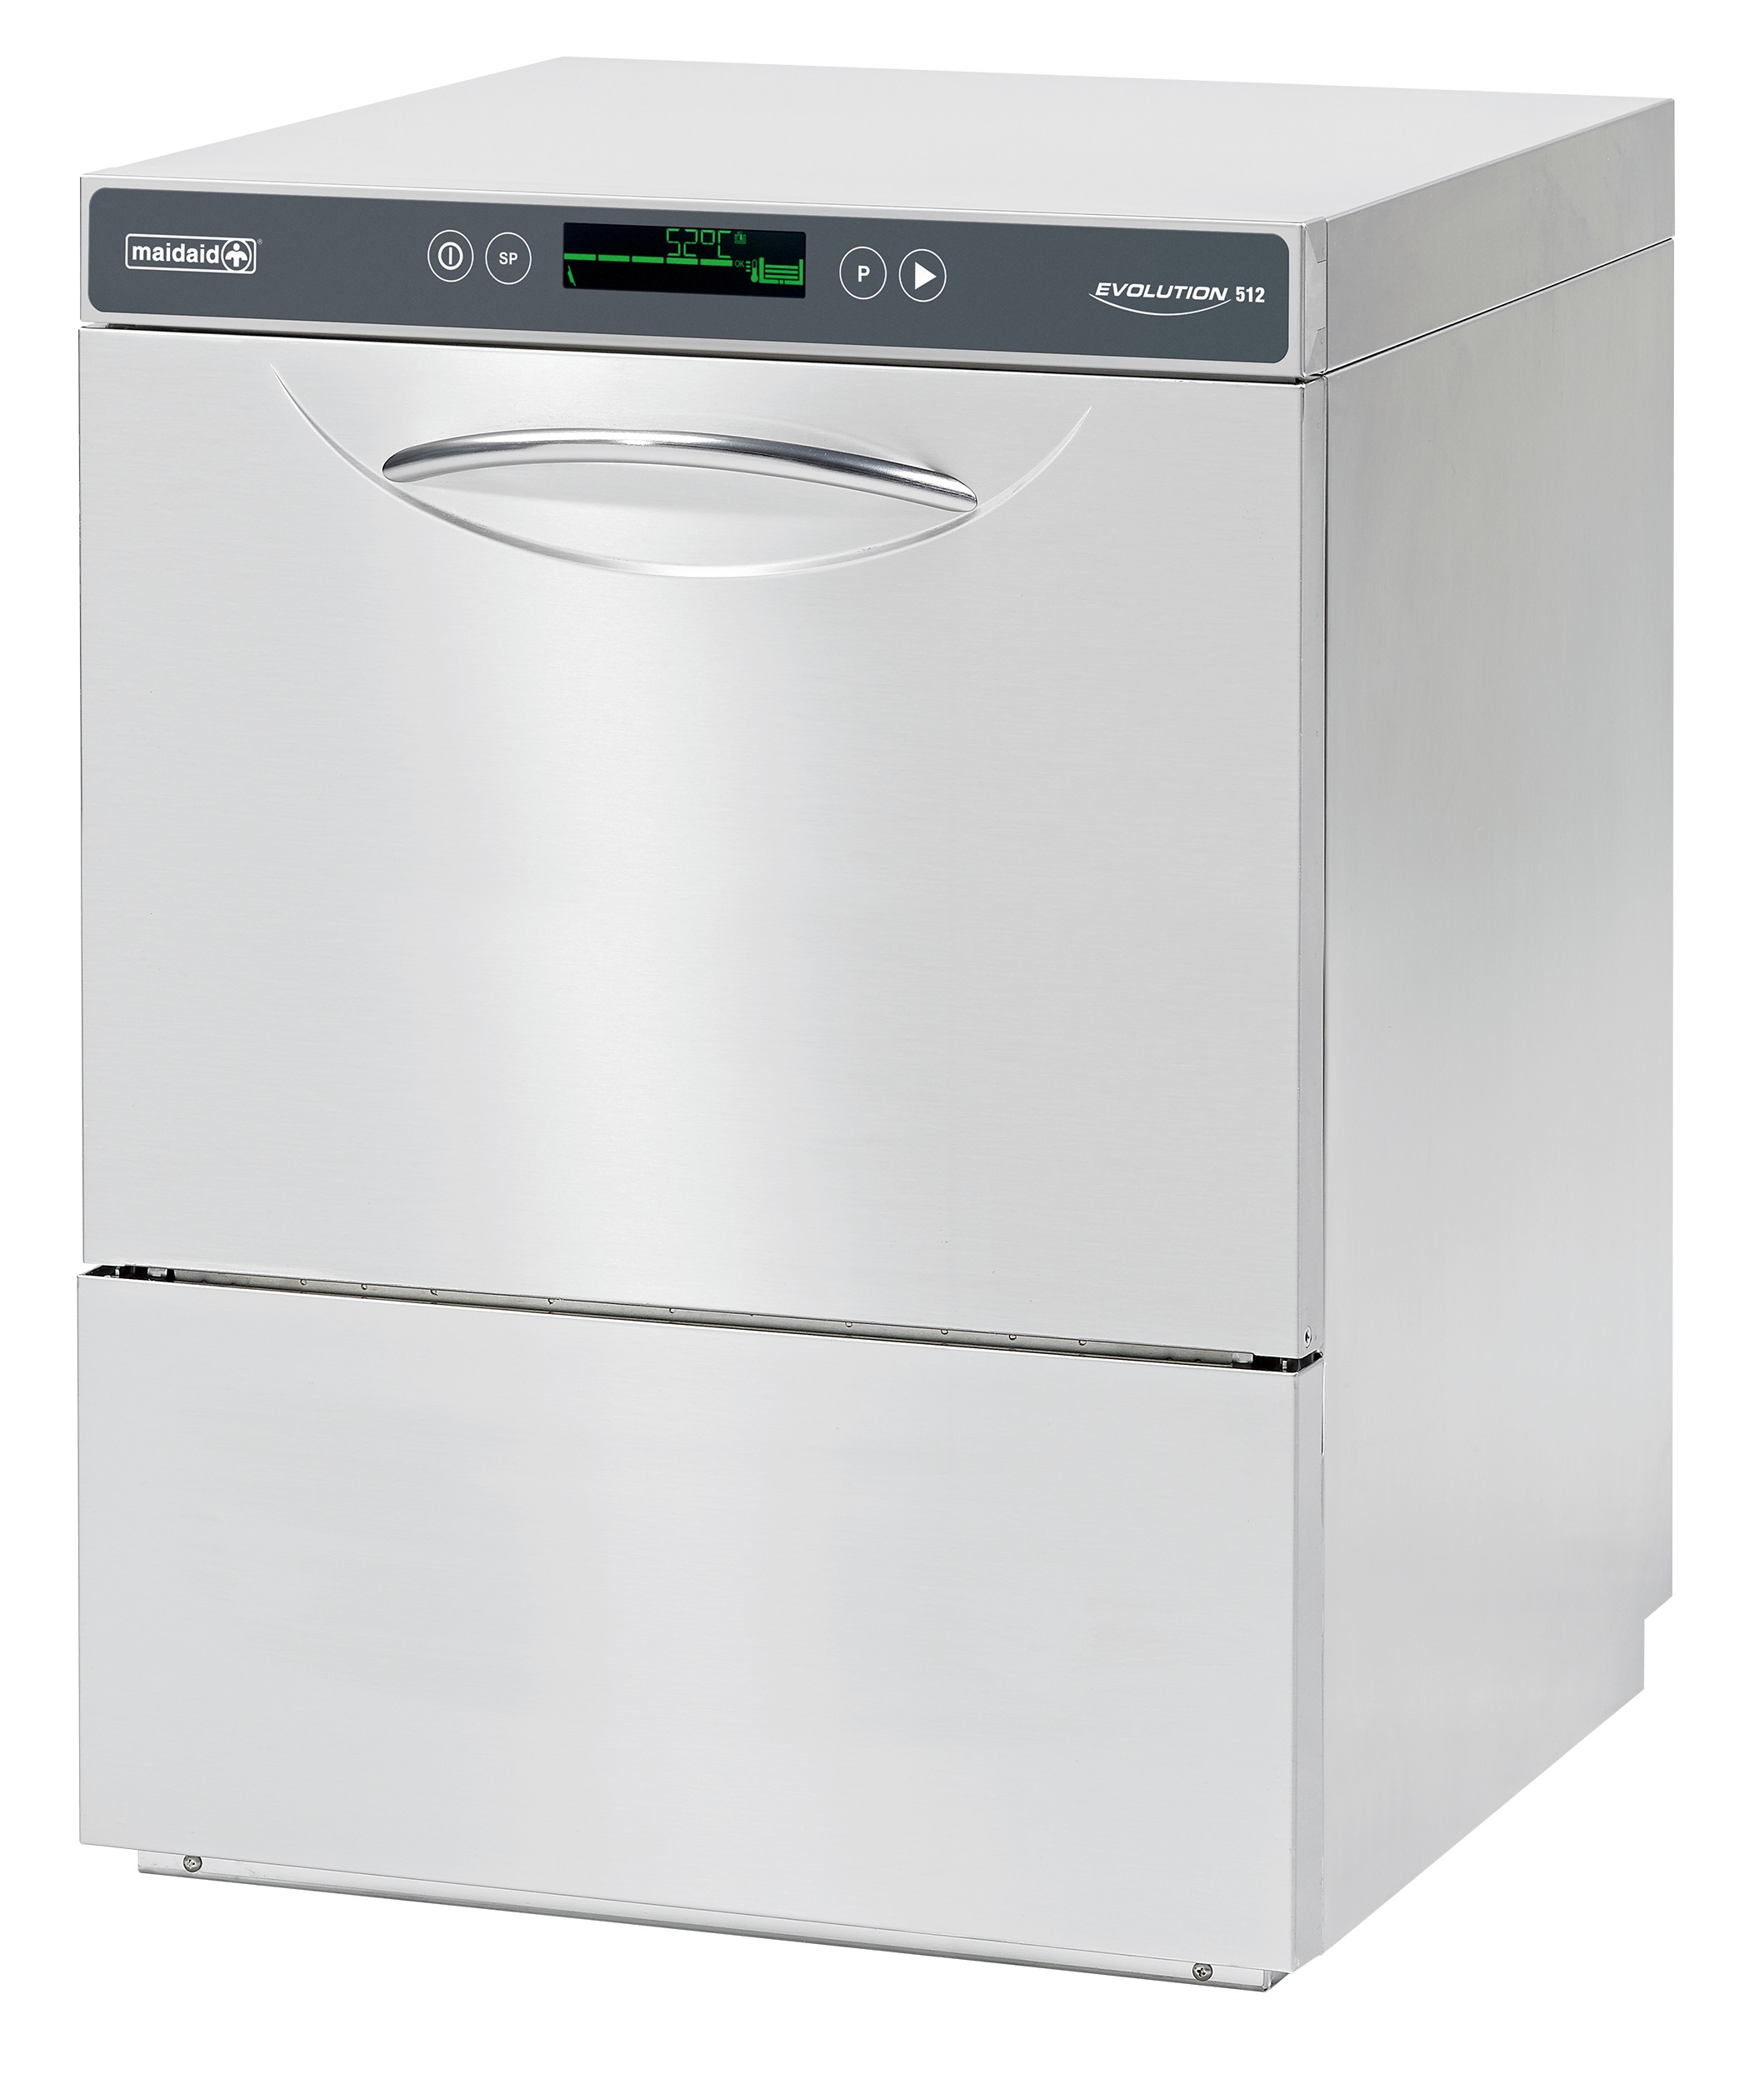 Maidaid Evolution 502 Undercounter Dishwasher